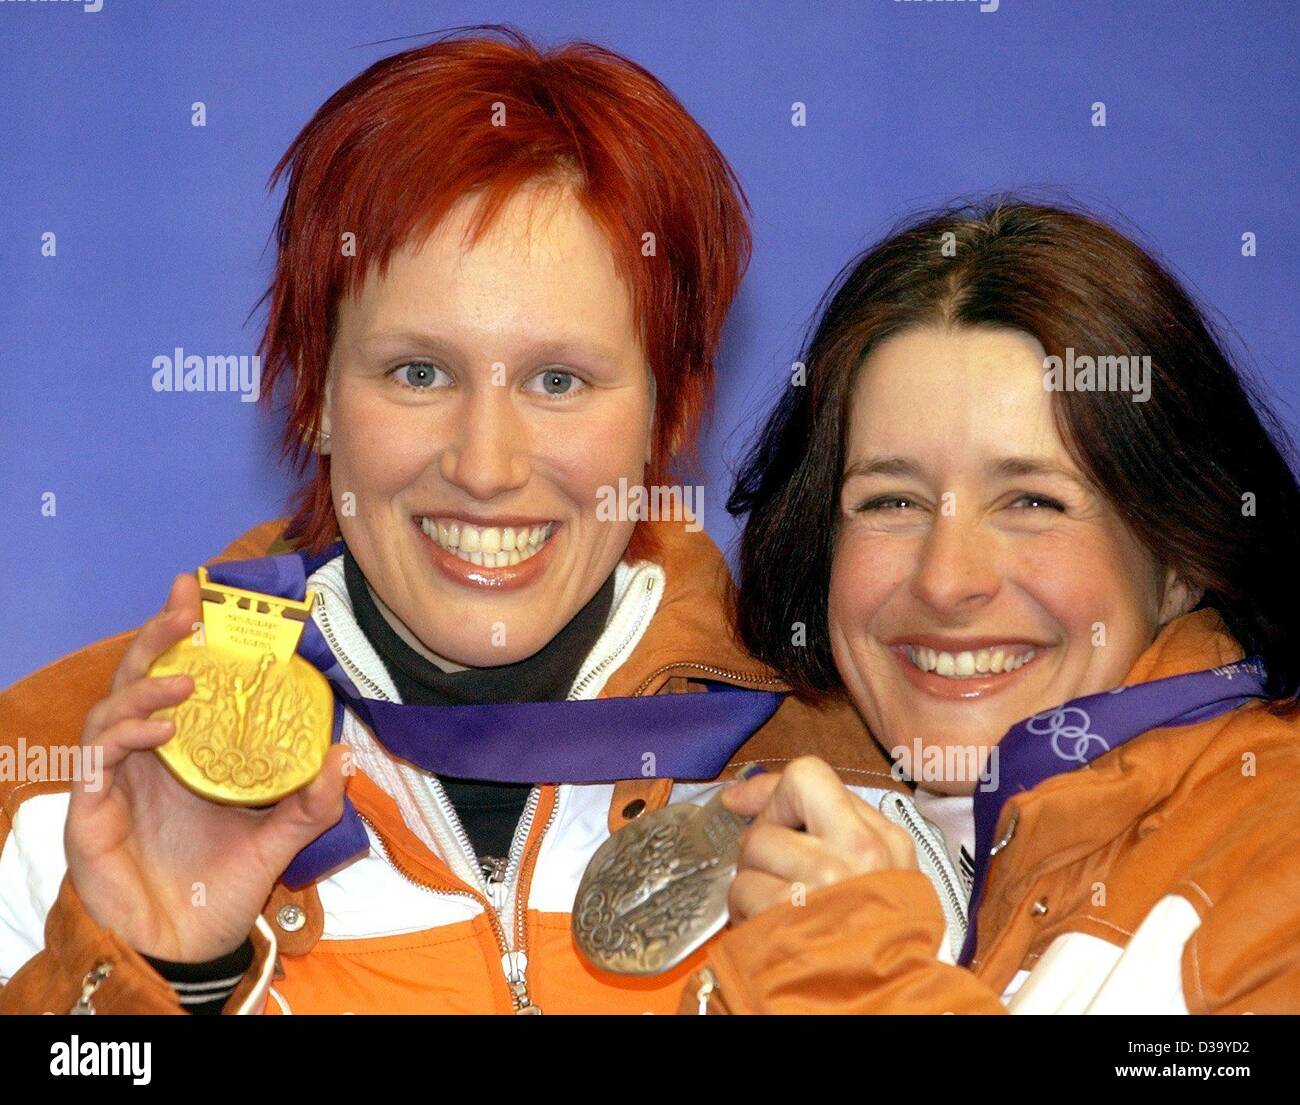 (Dpa) - XIX Olympische Winterspiele: Kati Wilhelm (l) zeigt ihre Goldmedaille ihre Teamkollegin Uschi Disl ihre Silbermedaille nach der Preisverleihung in Salt Lake City, 13.2.2002. Sie gewannen die 7,5 km Biathlon. Stockfoto